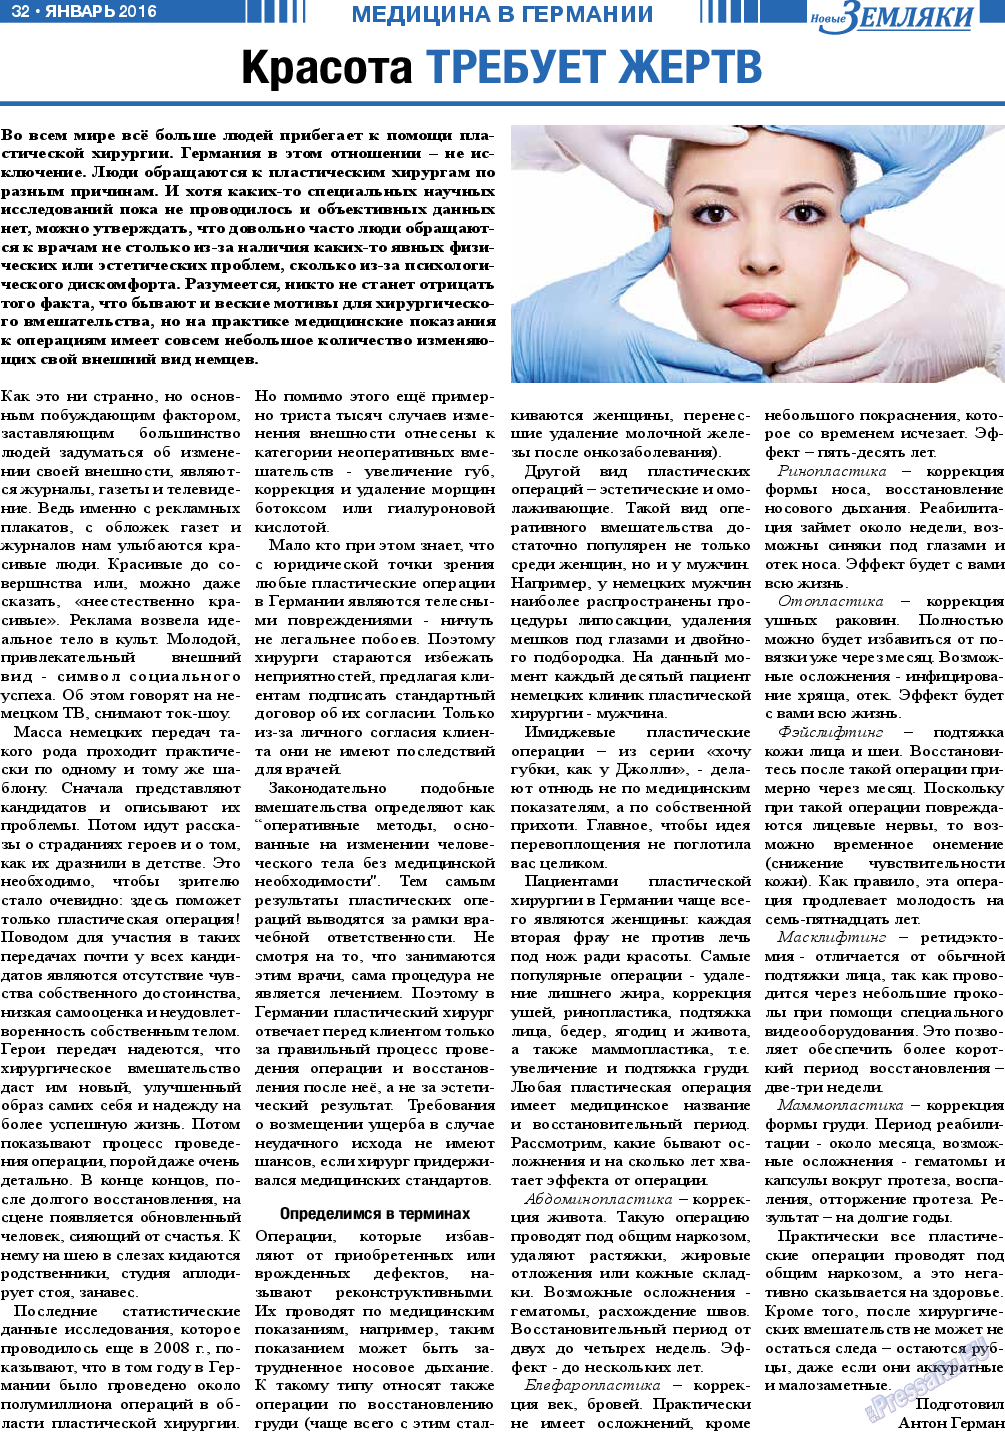 Новые Земляки, газета. 2016 №1 стр.32